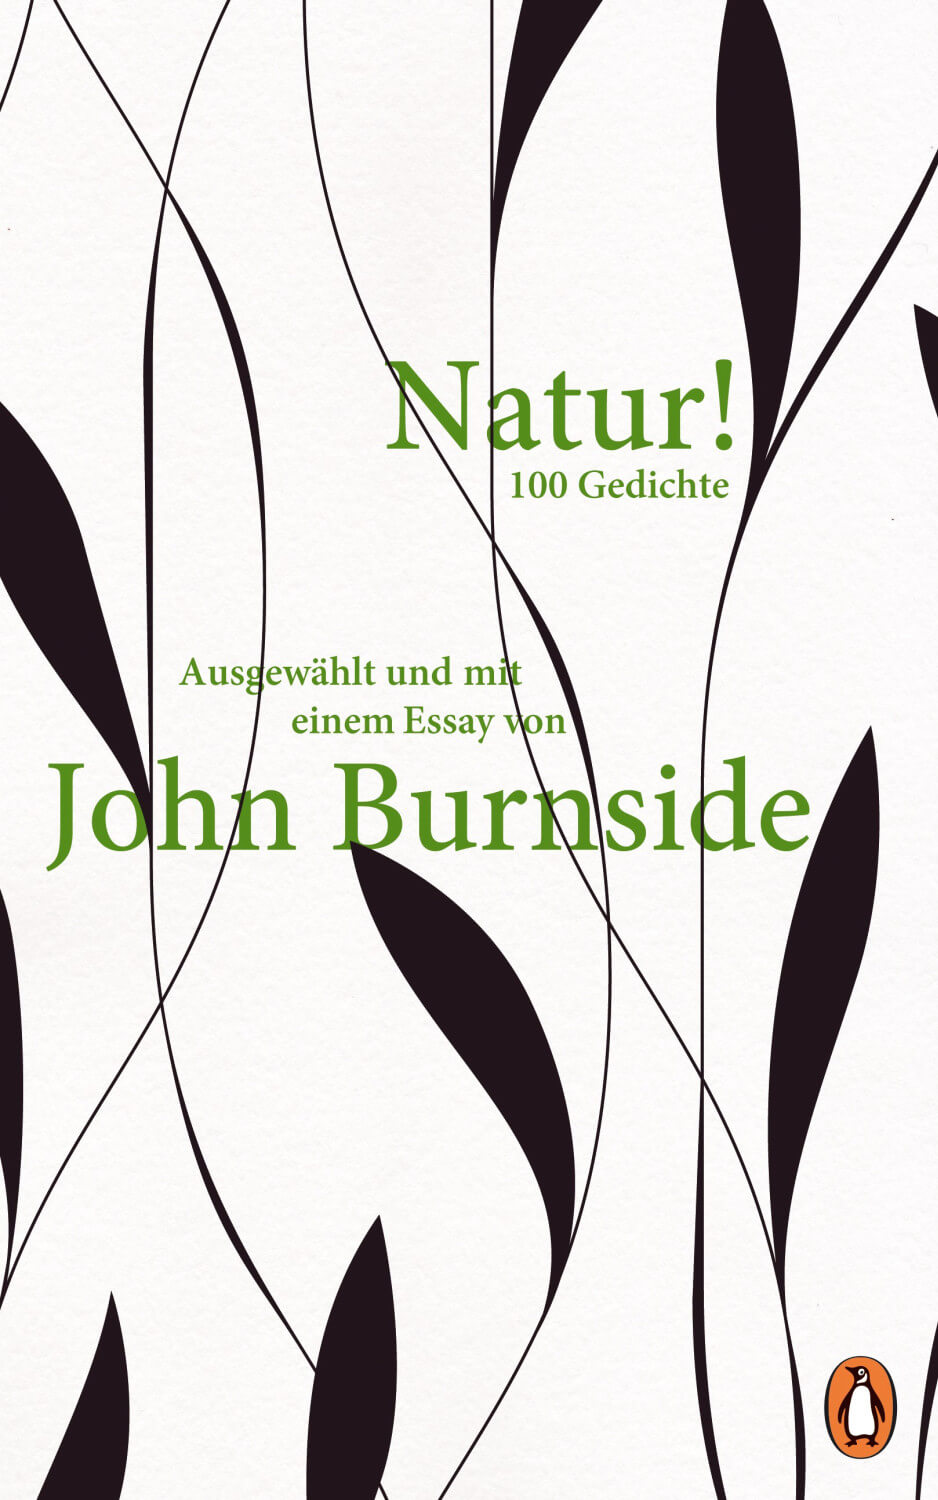 John Burnside (Hg.): Natur! 100 Gedichte